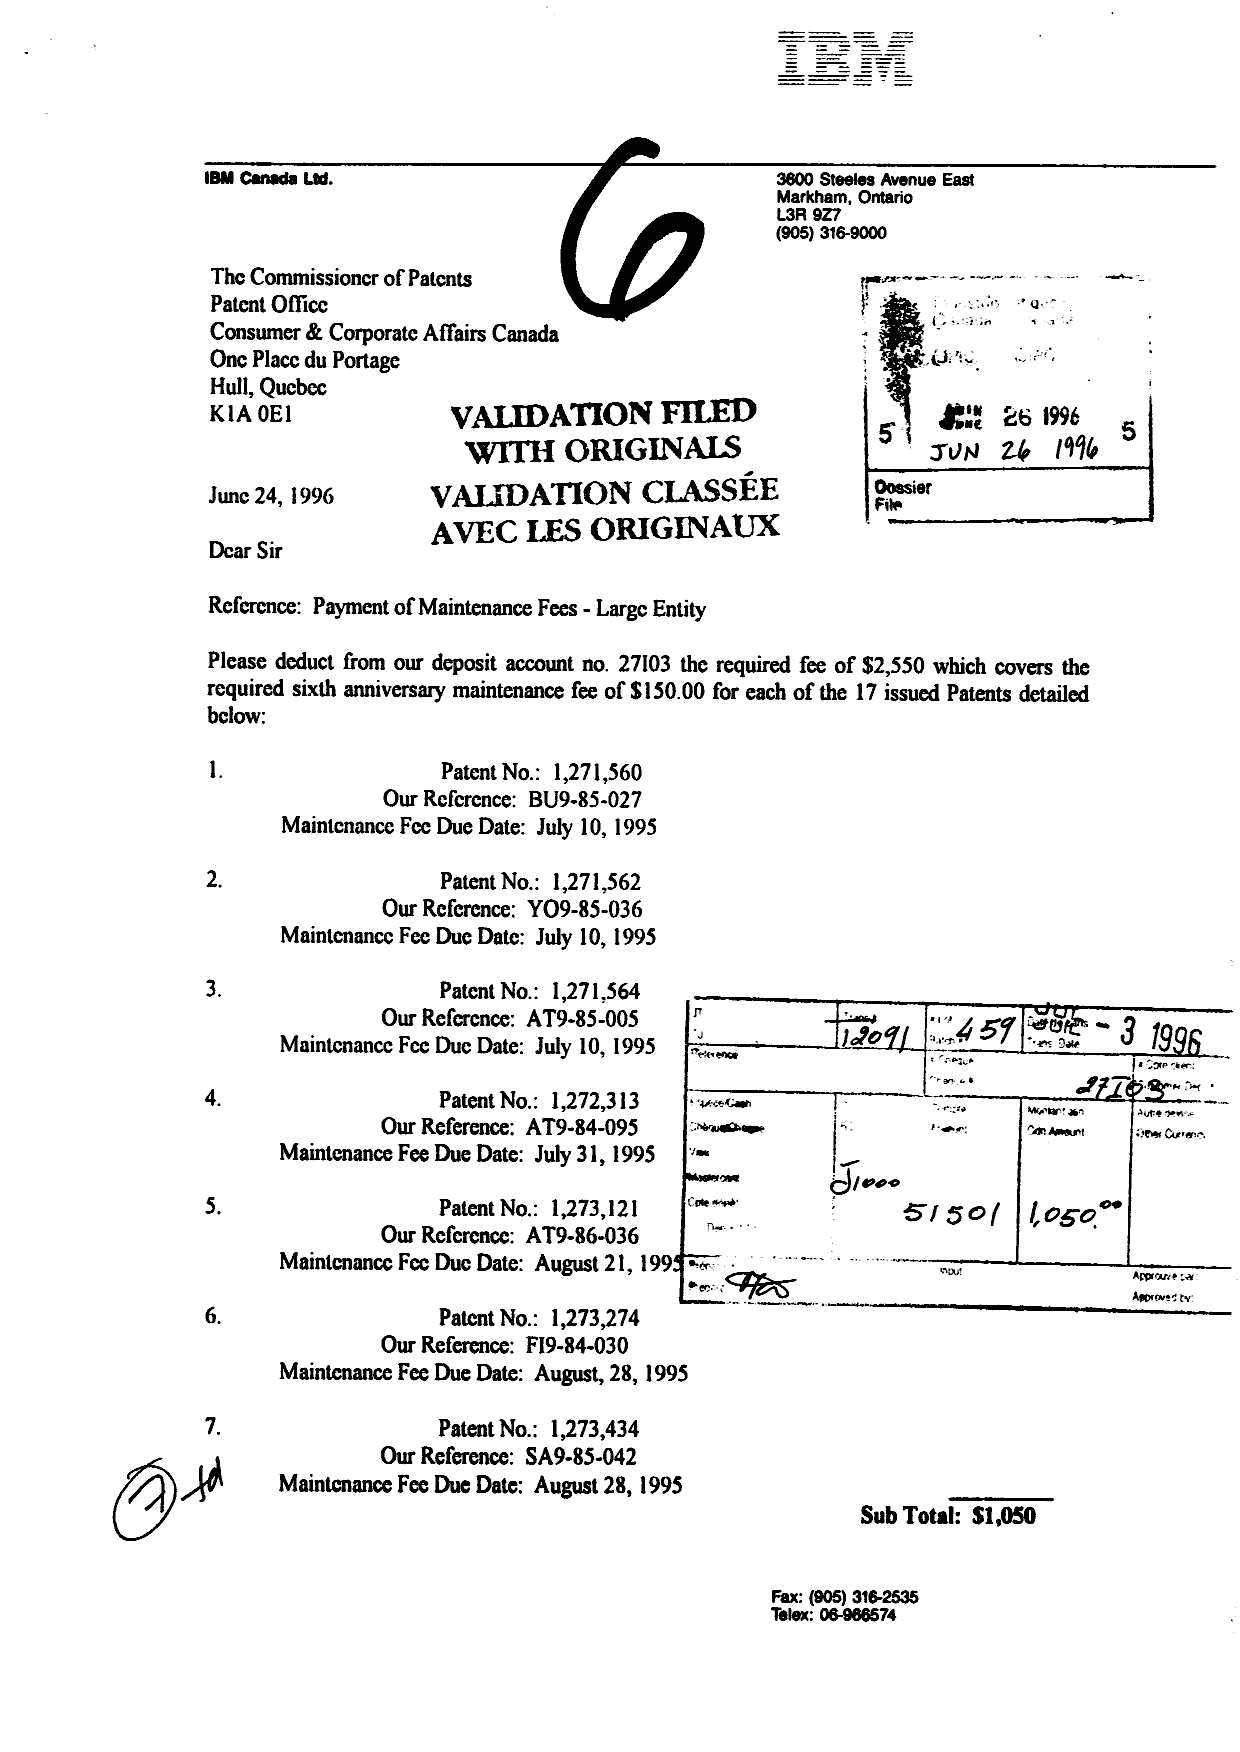 Document de brevet canadien 1271564. Taxes 19960626. Image 1 de 1